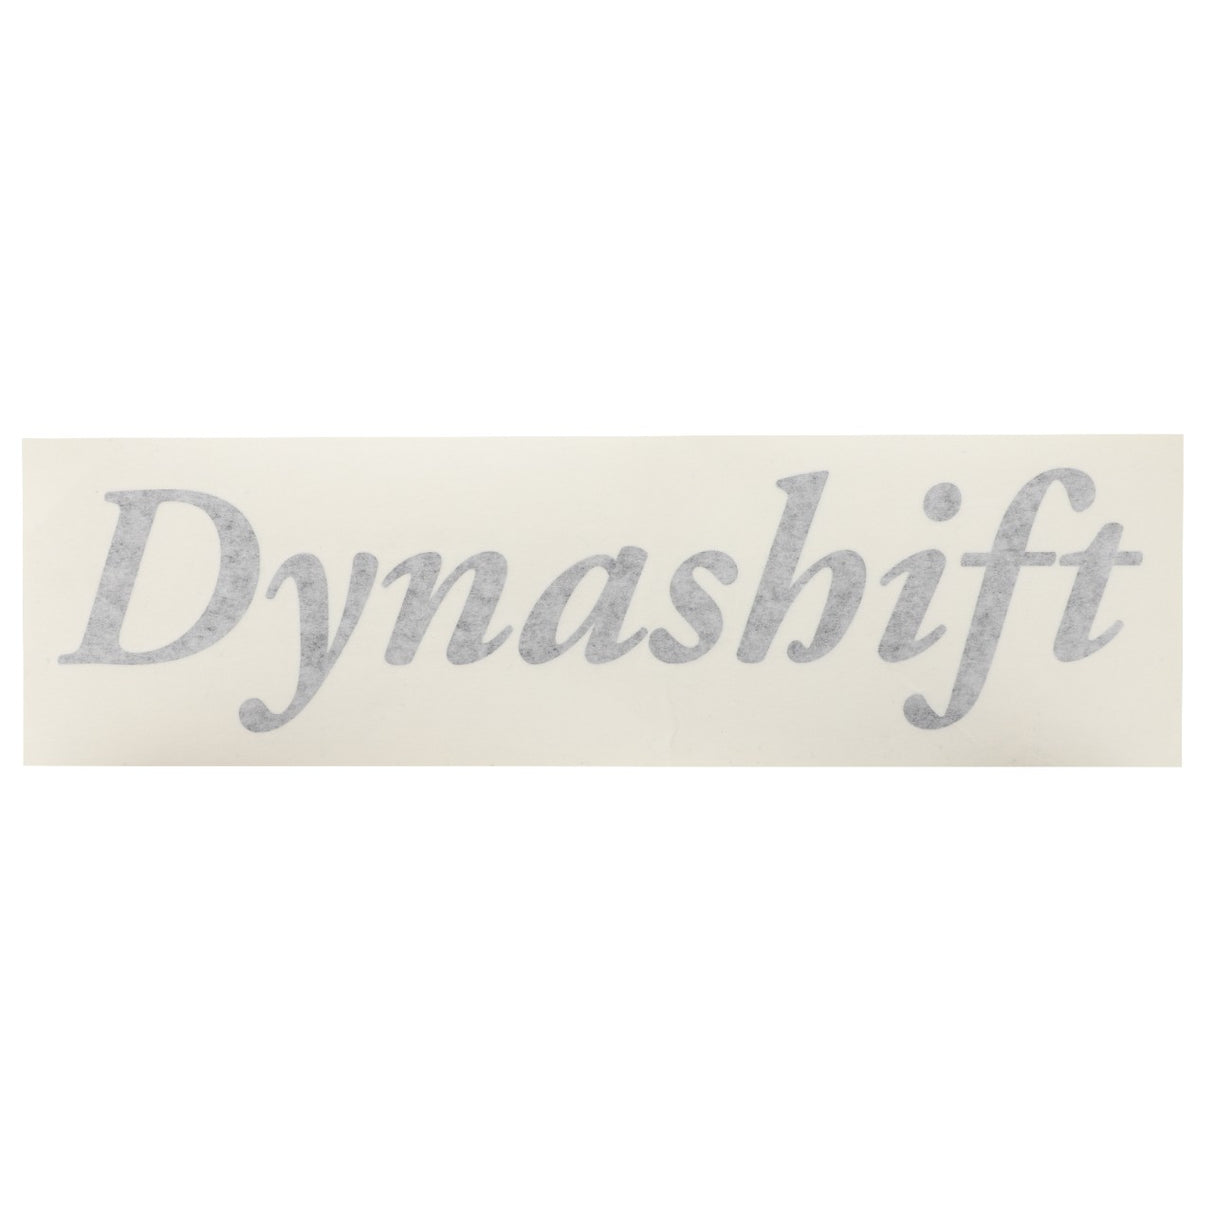 AGCO | Decal, Dynashift - 4274858M1 - Farming Parts